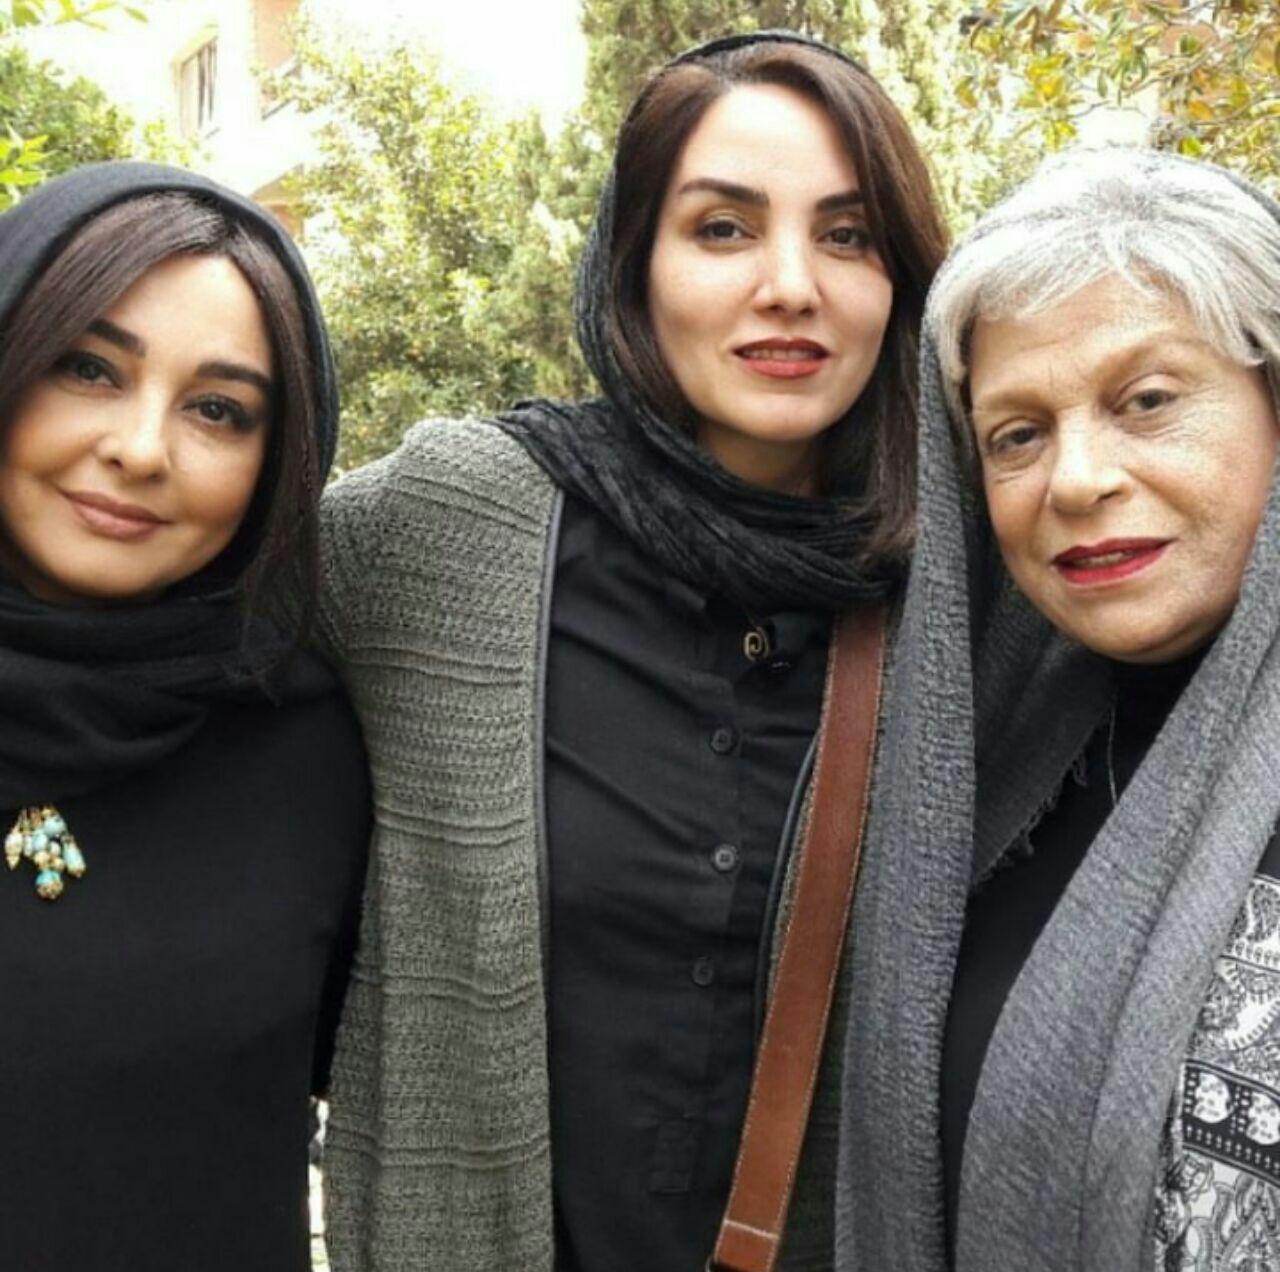 تینا پاکروان در پشت صحنه فیلم سینمایی لس آنجلس تهران به همراه ماهایا پطروسیان و گوهر خیراندیش